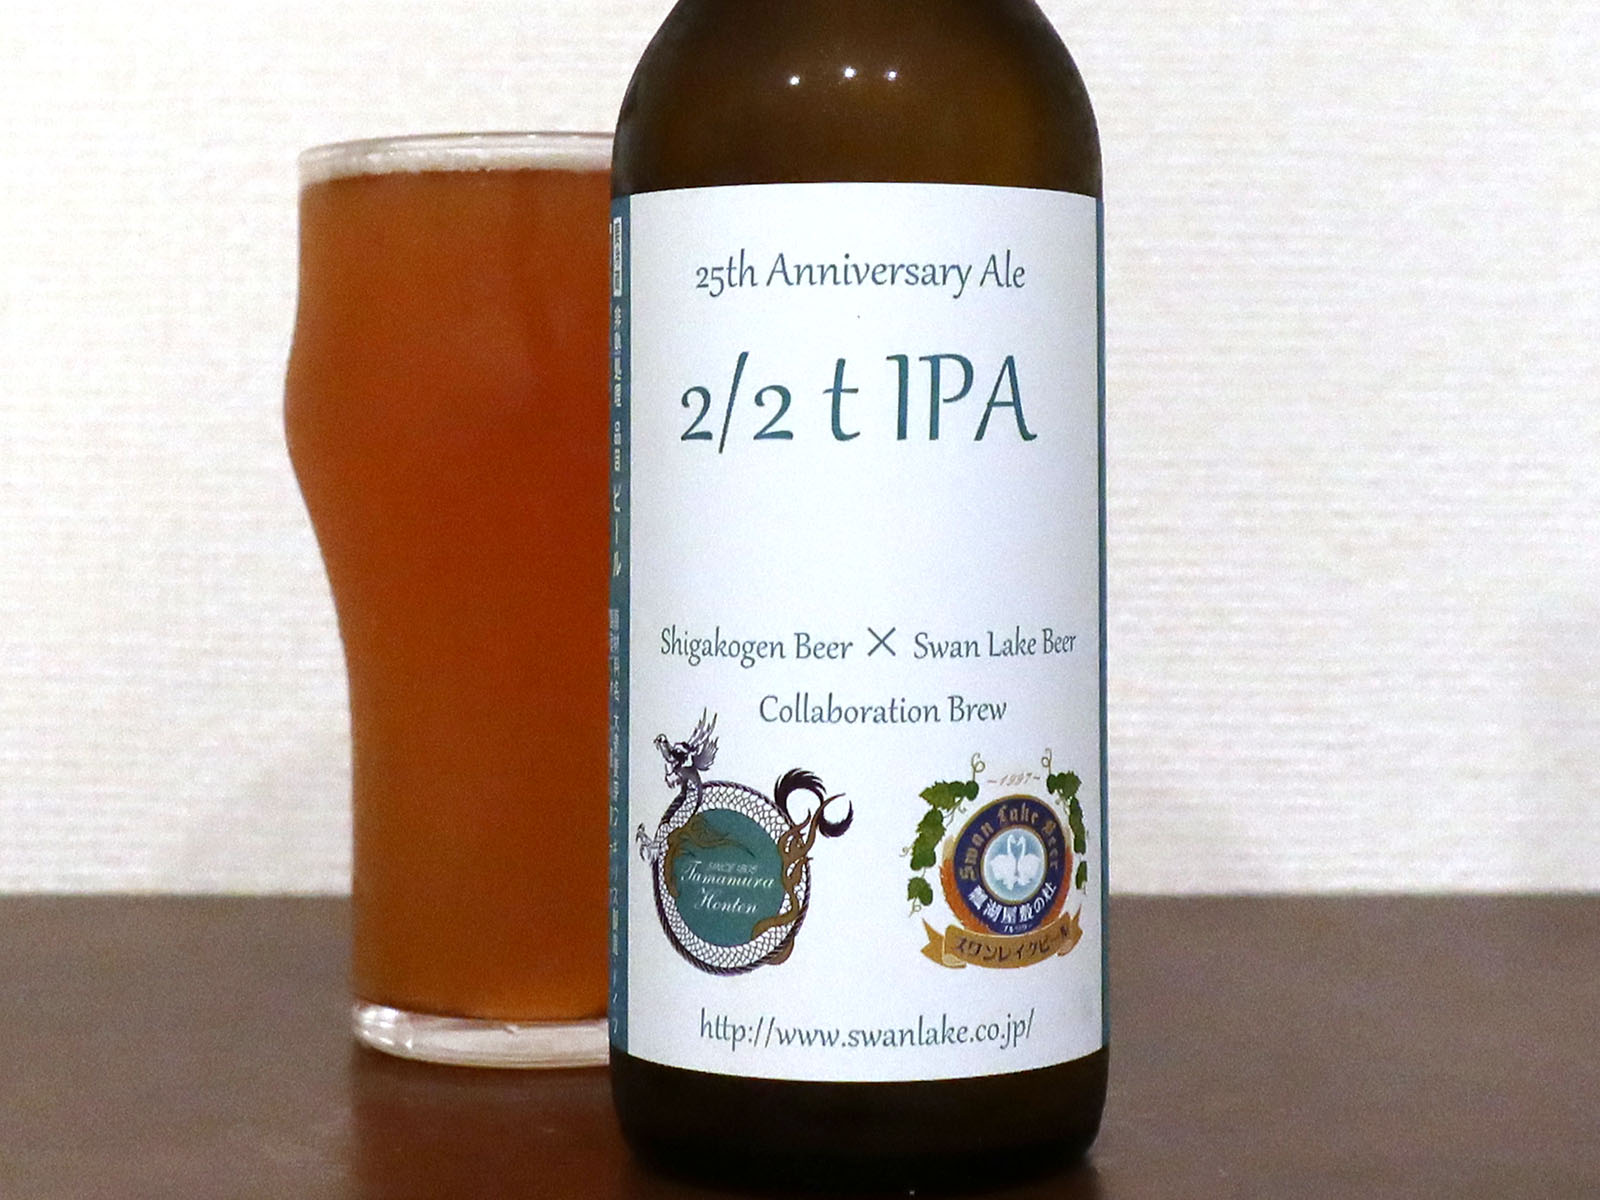 スワンレイクビール 2/2t IPA